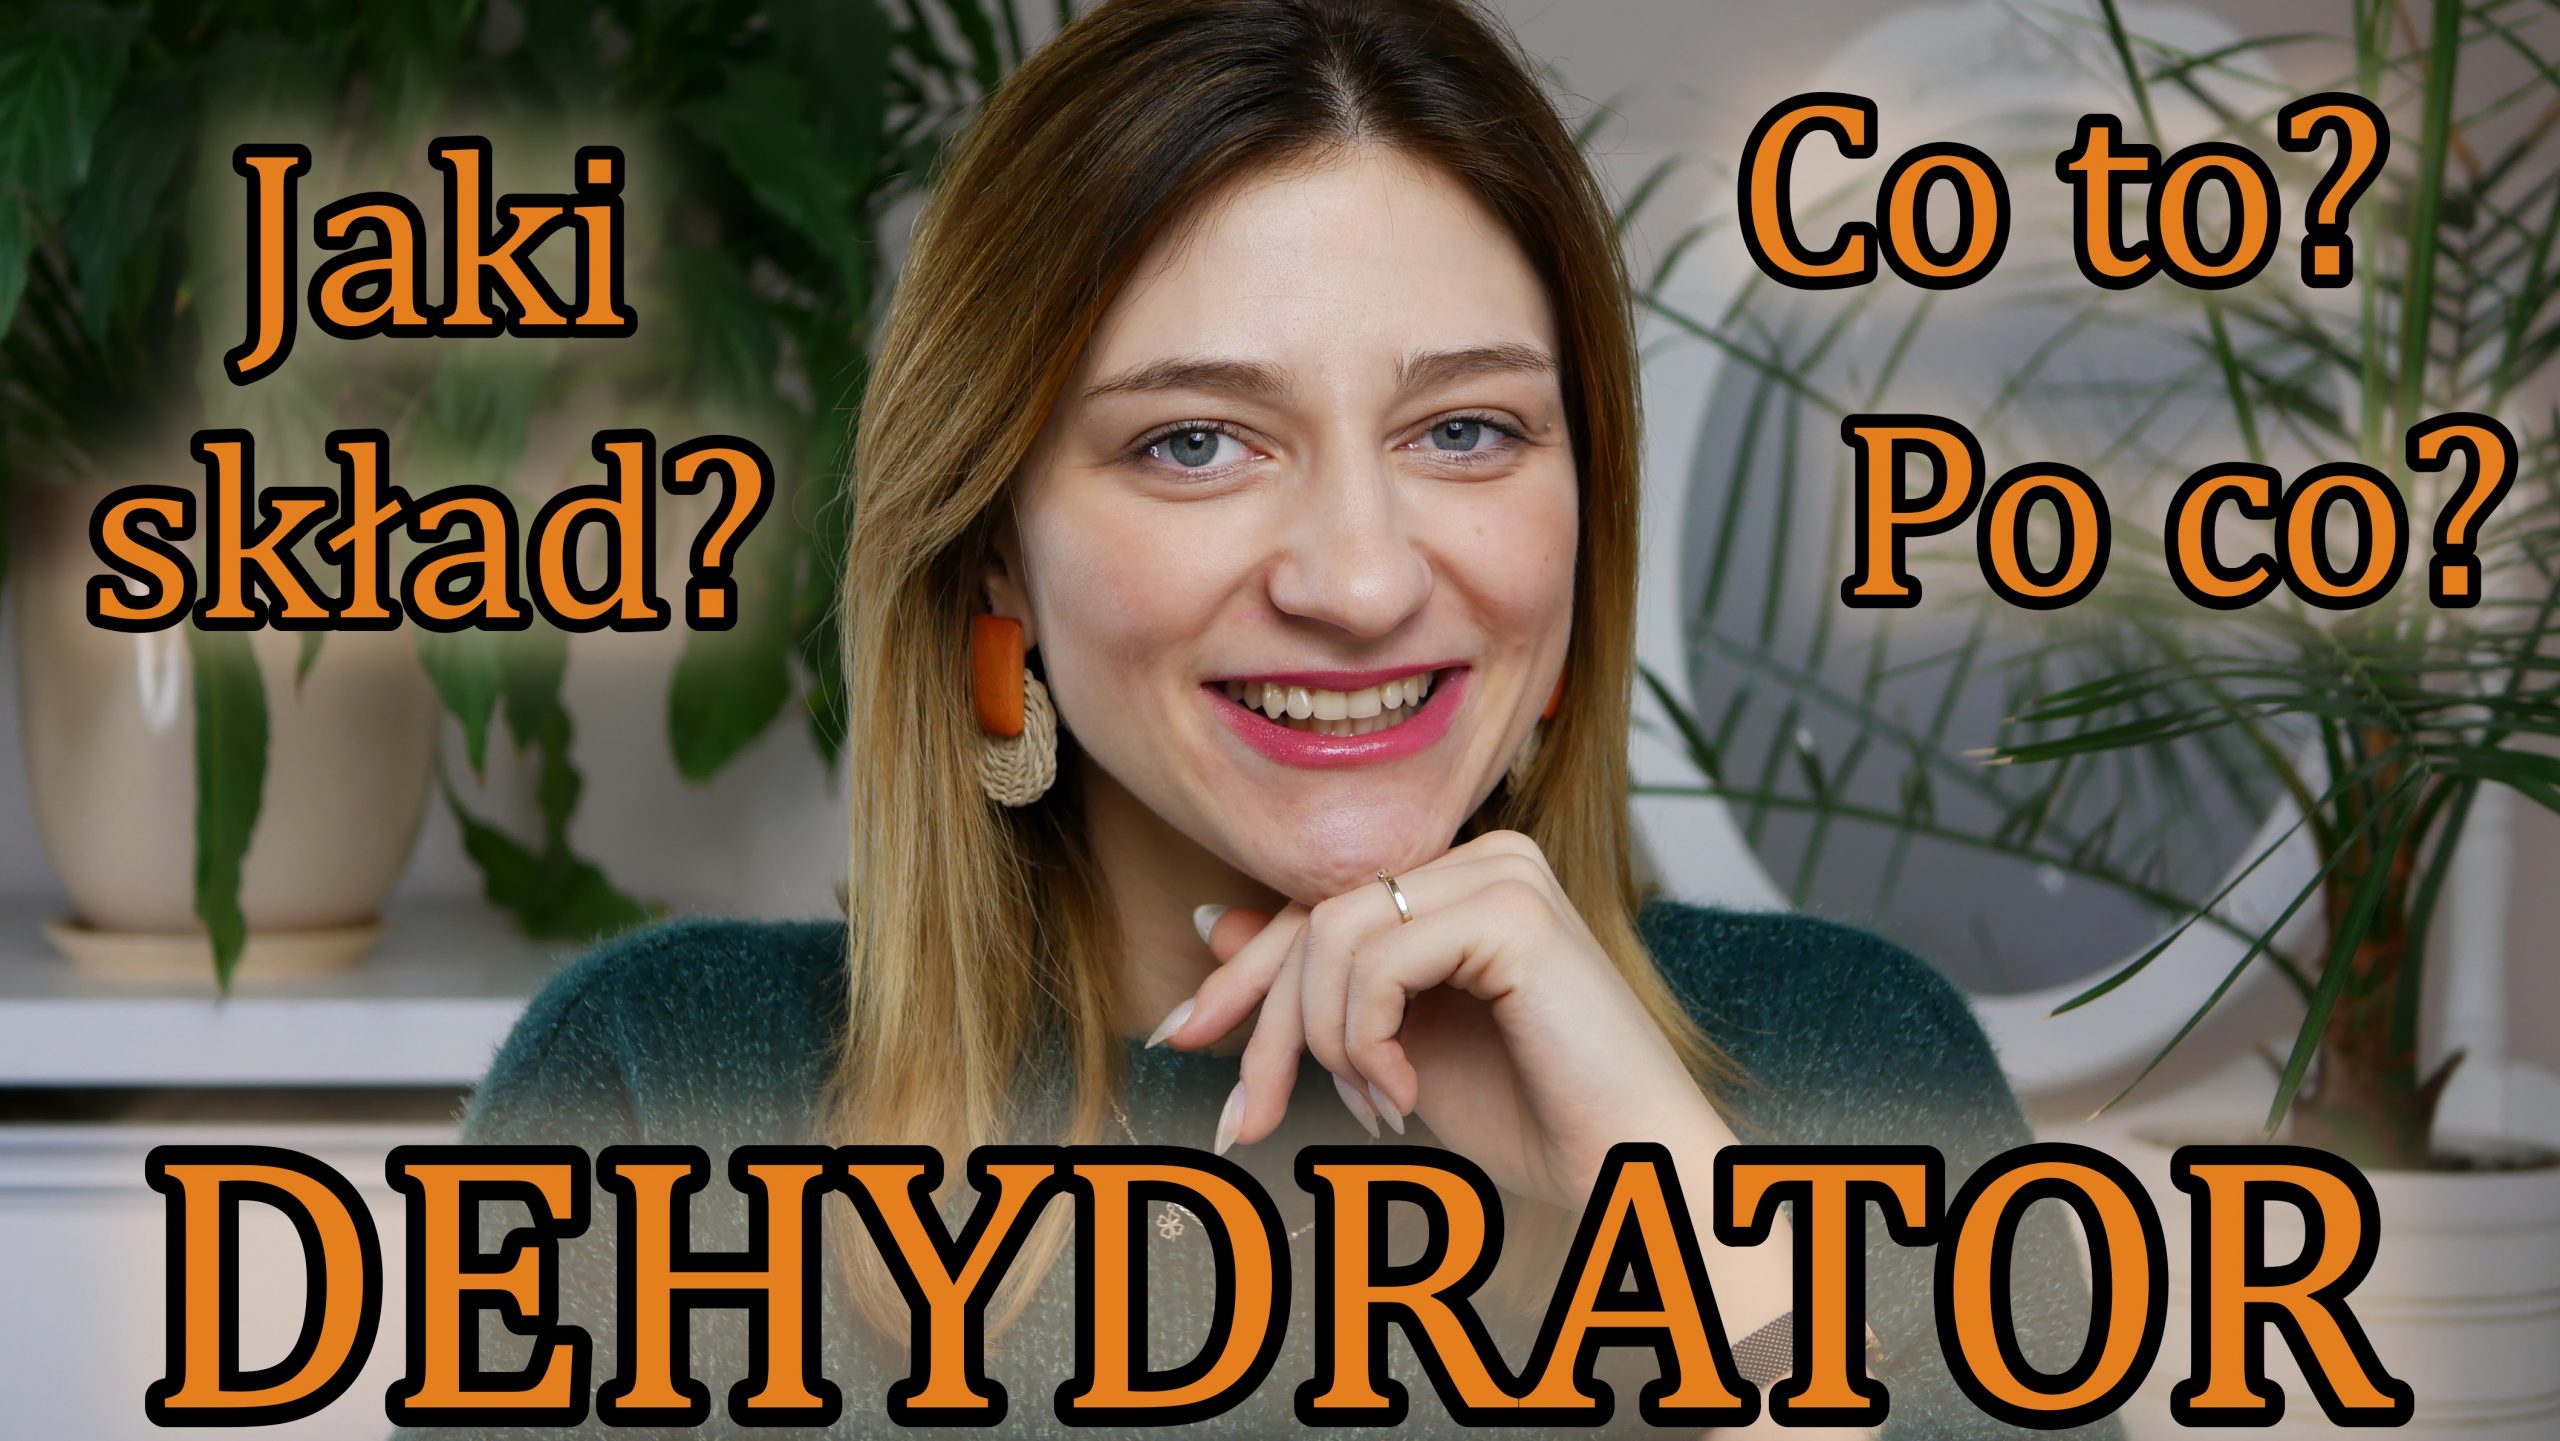 DEHYDRATOR - odwadniacz do paznokci usuwa wode co to jest Jaki skład powinien mieć dehydrator Po co używać dehydrtatora